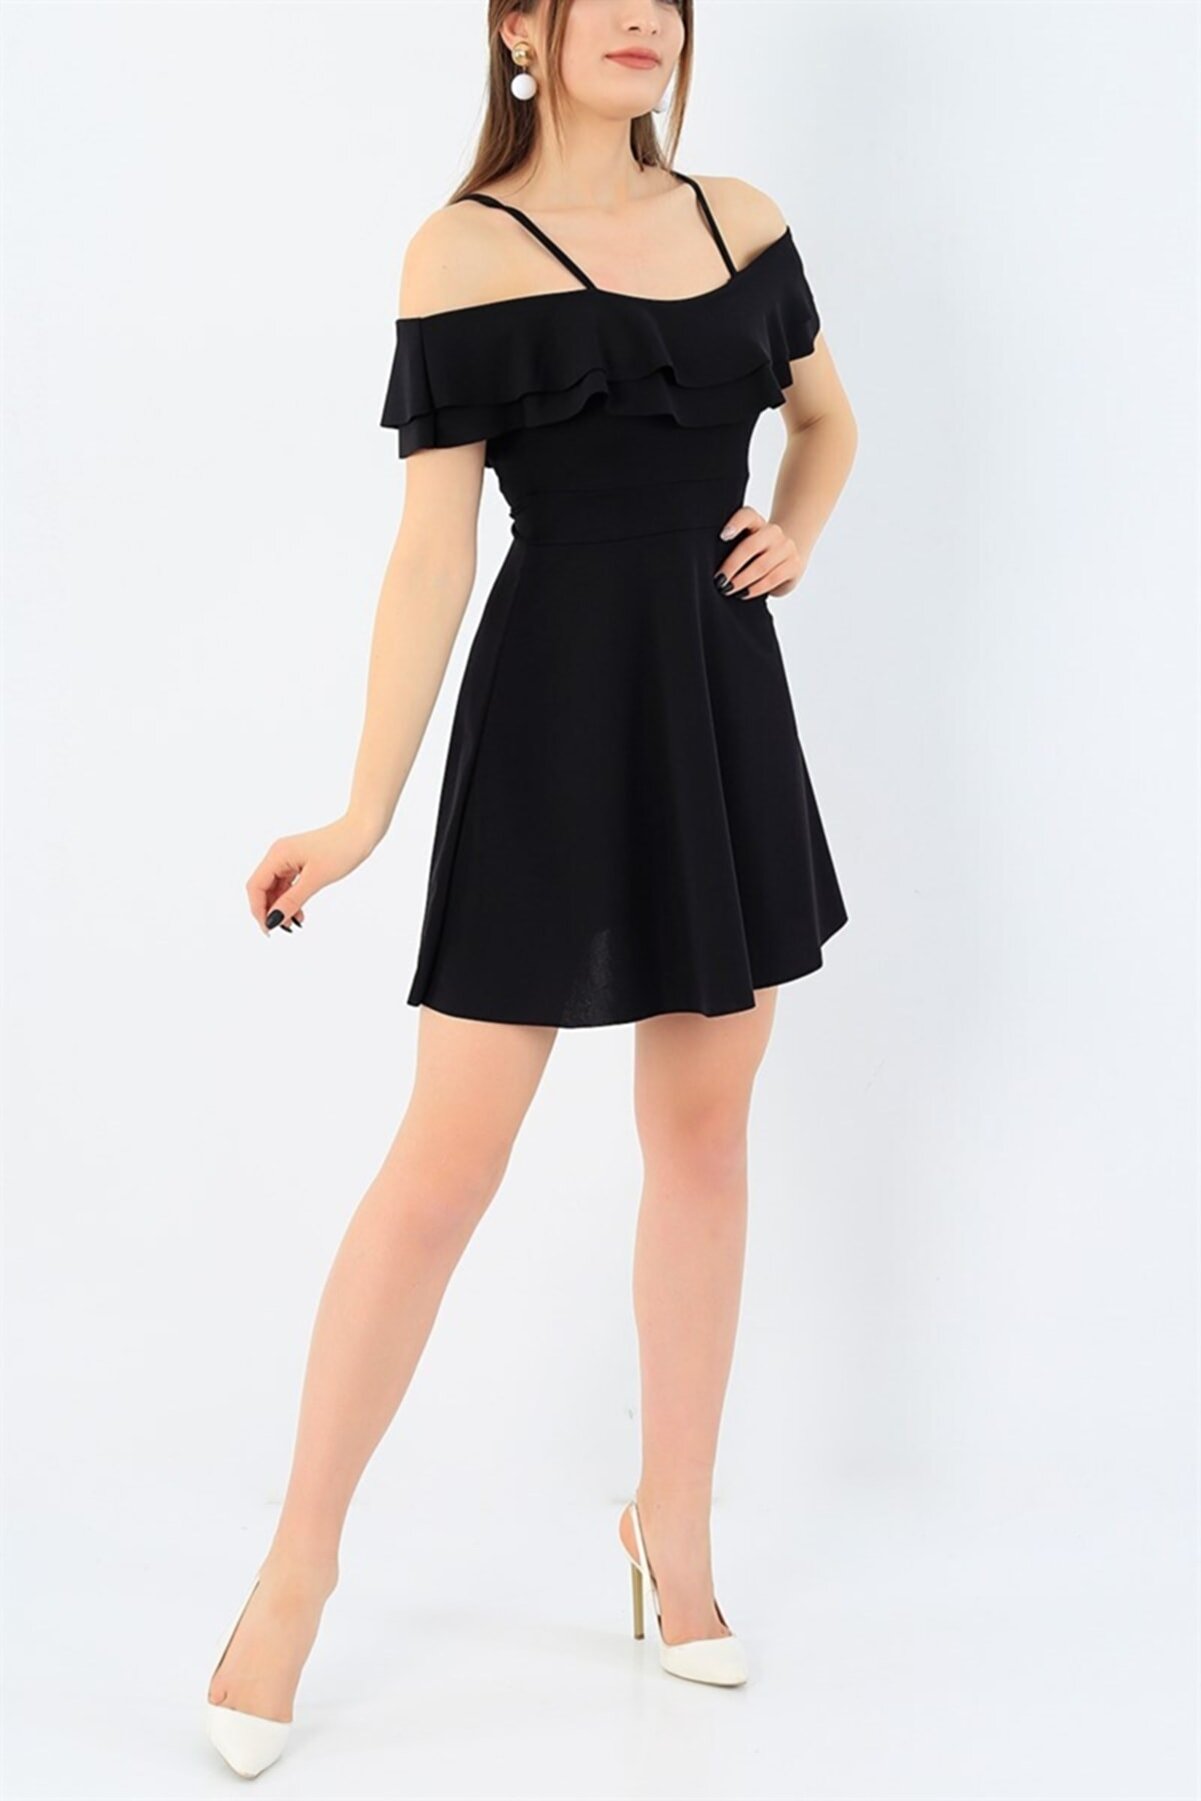 Secret Passion Lingerie Esnek Krep Kumaş Yakası Iki Kat Volanlı Askı Detaylı Siyah Abiye Elbise Siyah Mezuniyet Elbisesi 014